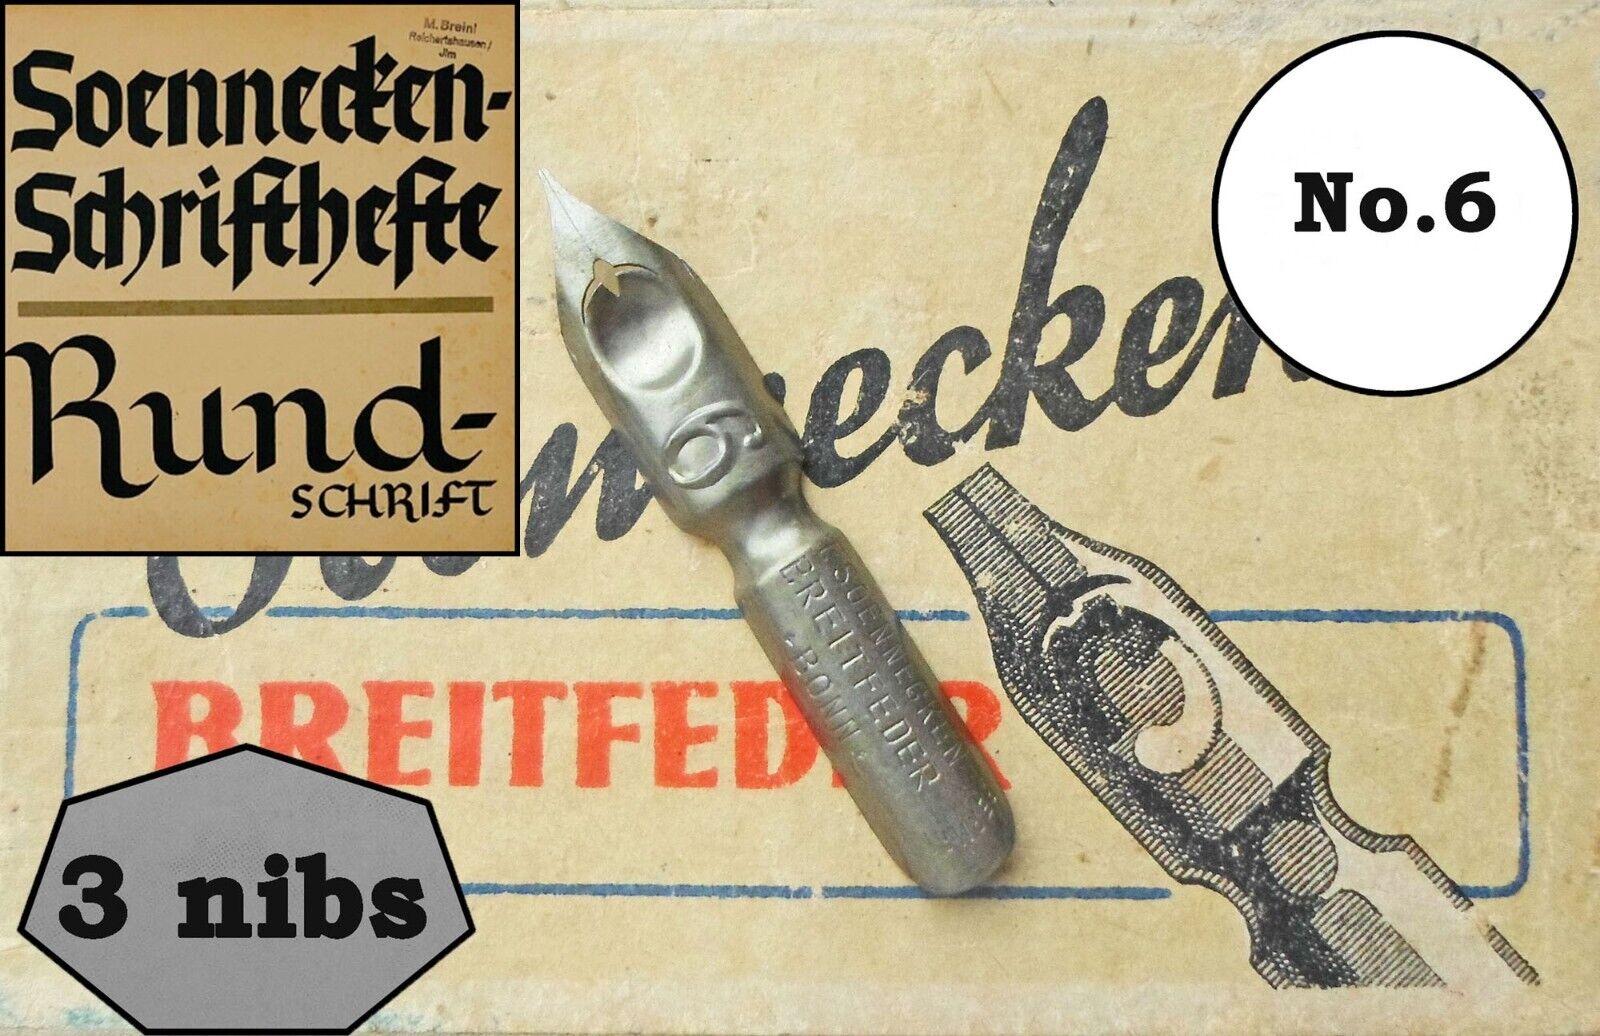 3 vintage Soennecken Breitfeder no.6 nibs